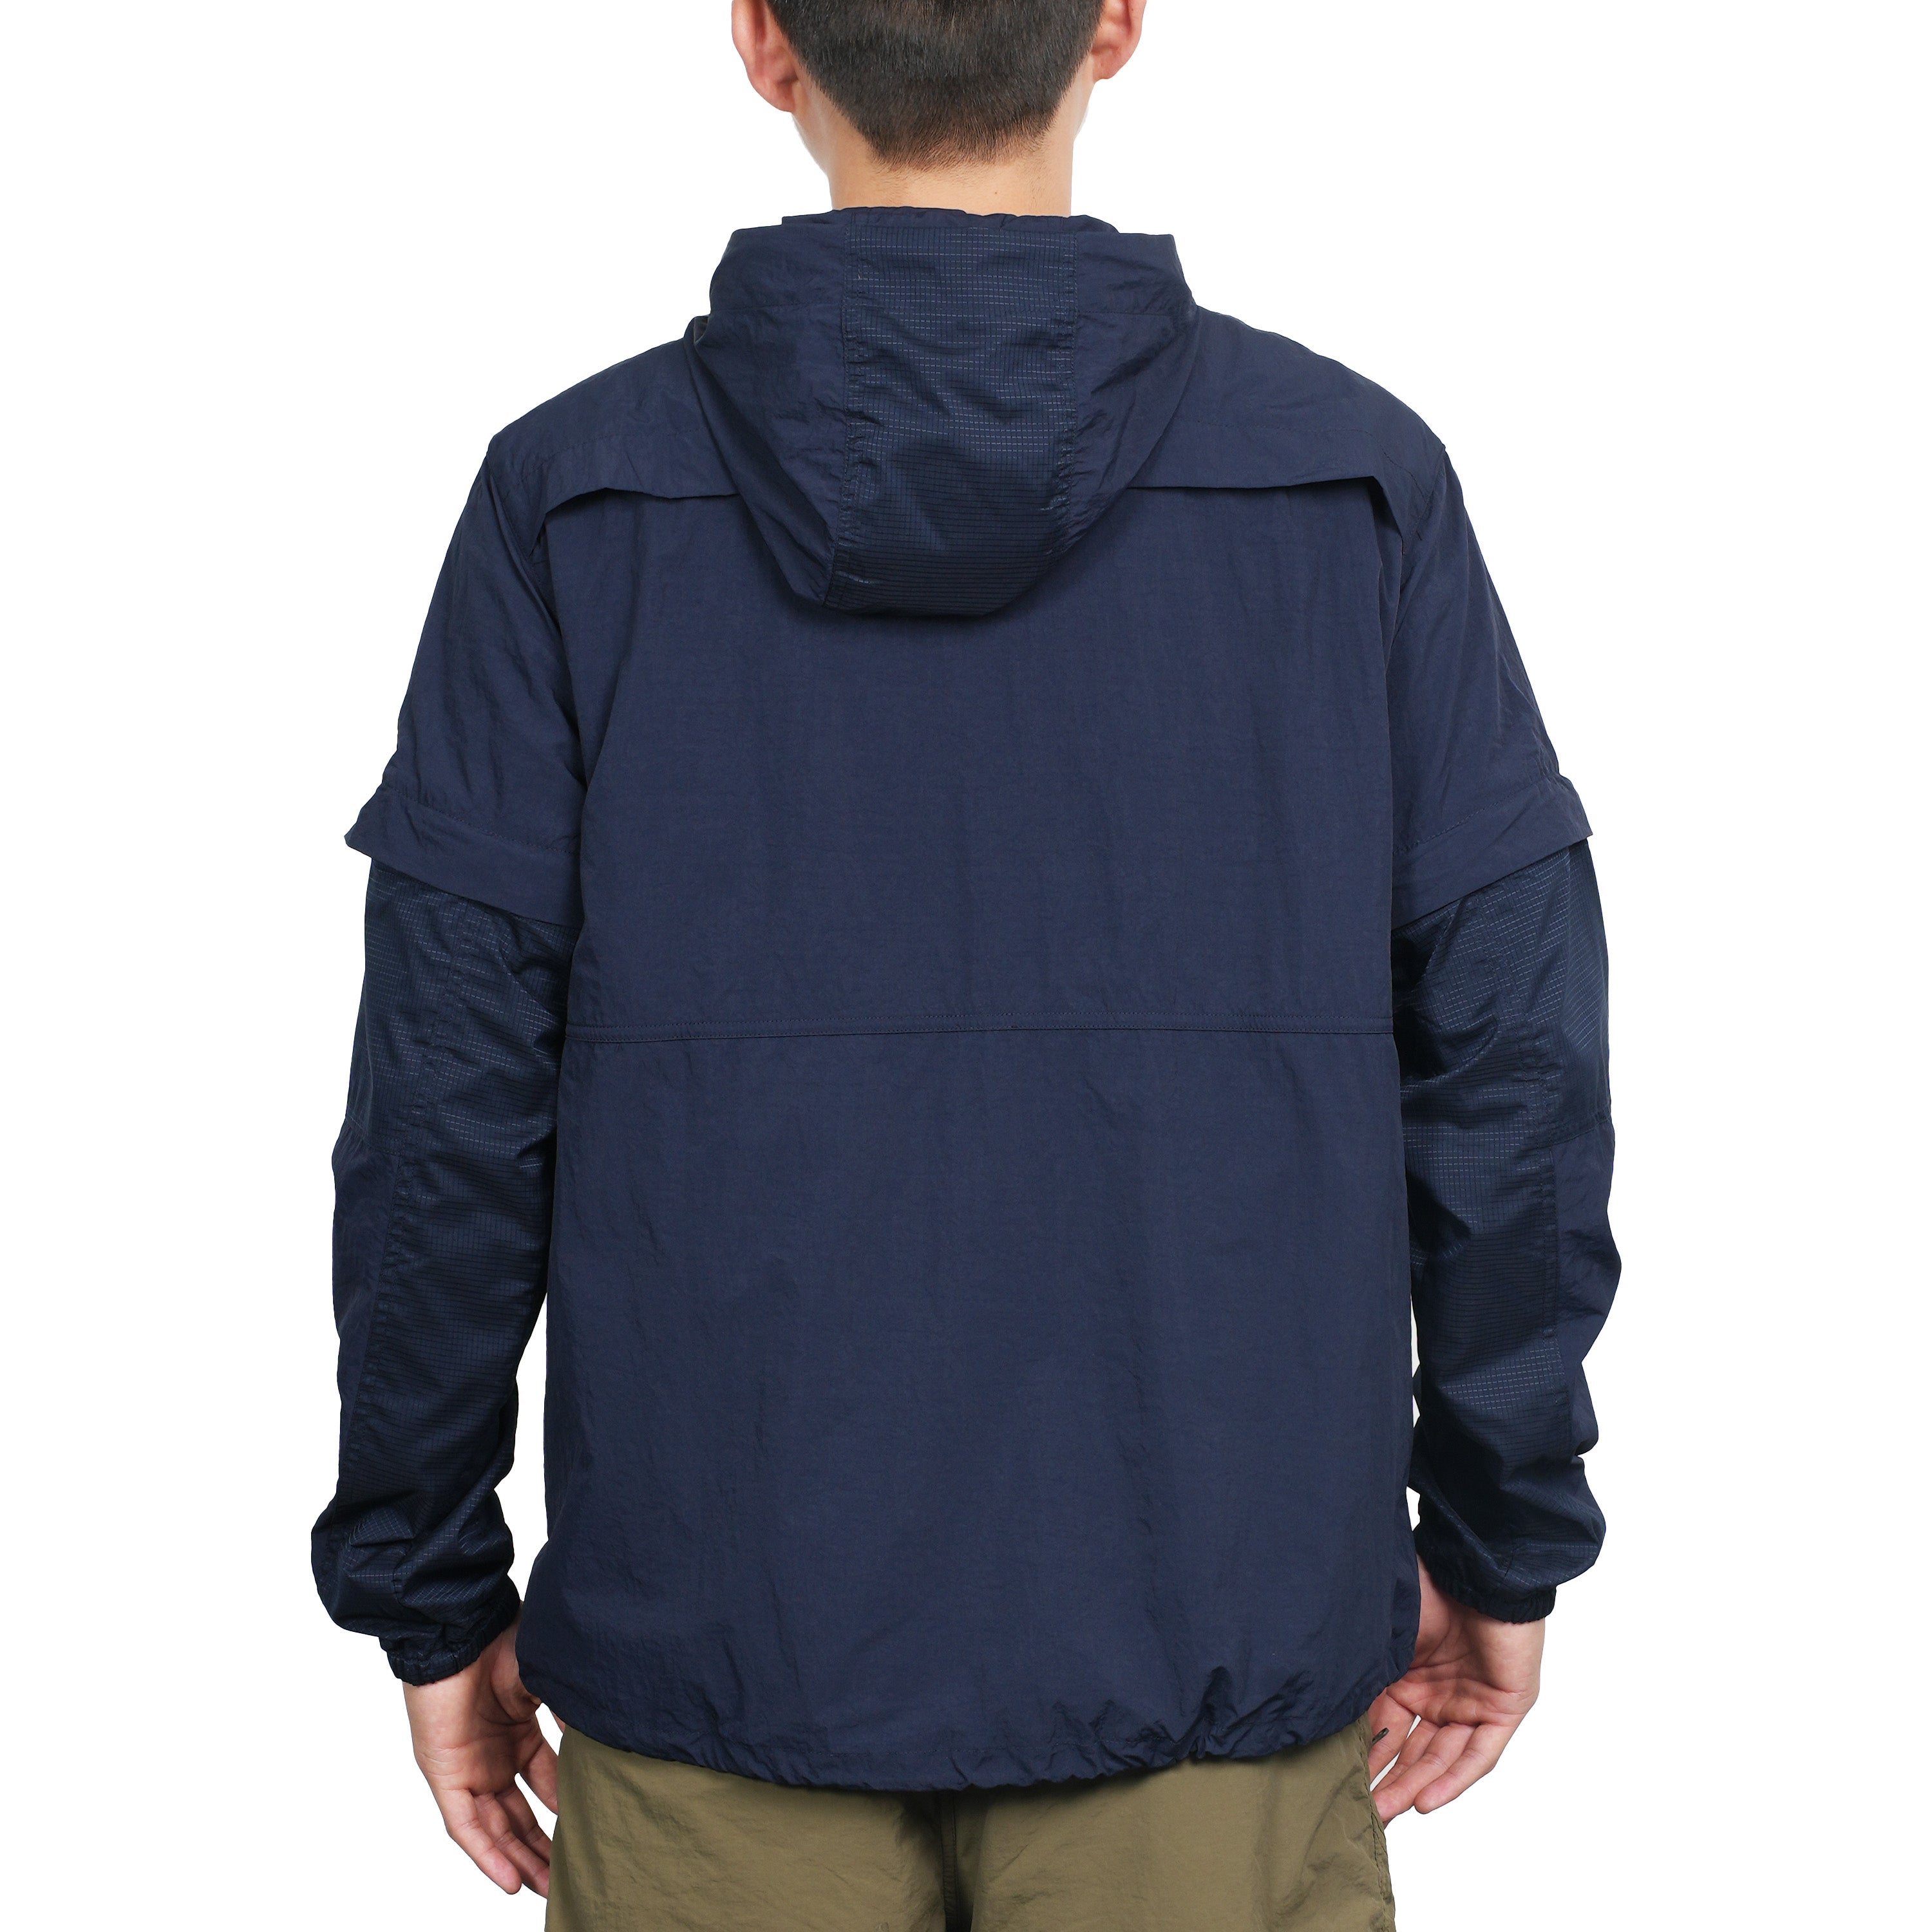 Exway Outdoor Lightweight Waterproof Jacket